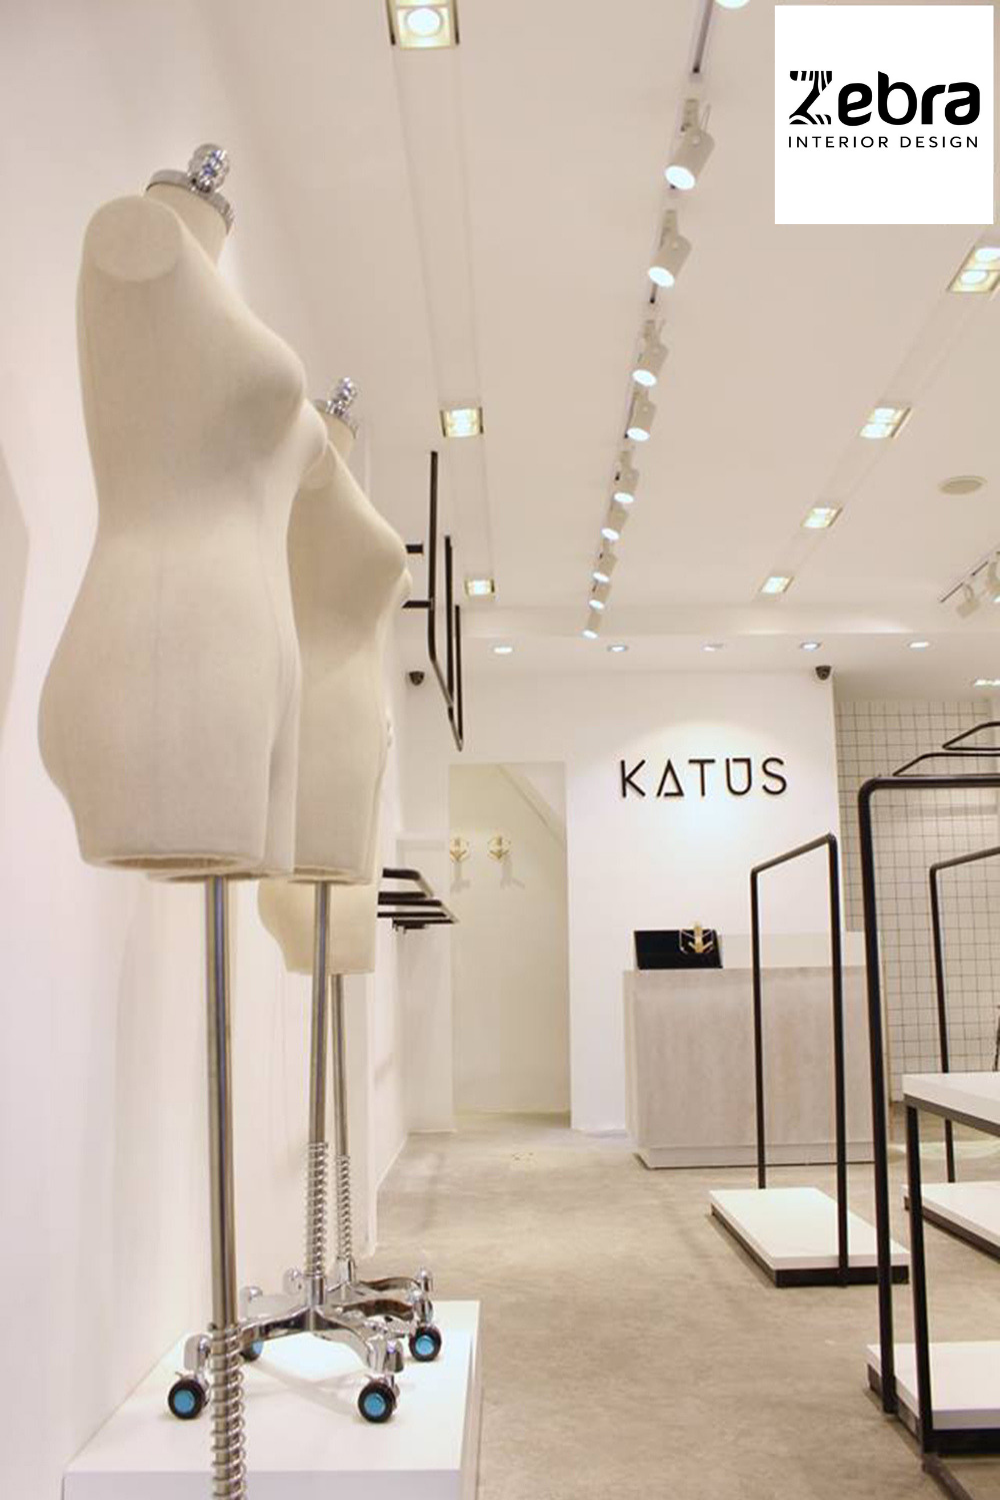 thiết kế nội thất cửa hàng katus cmt8